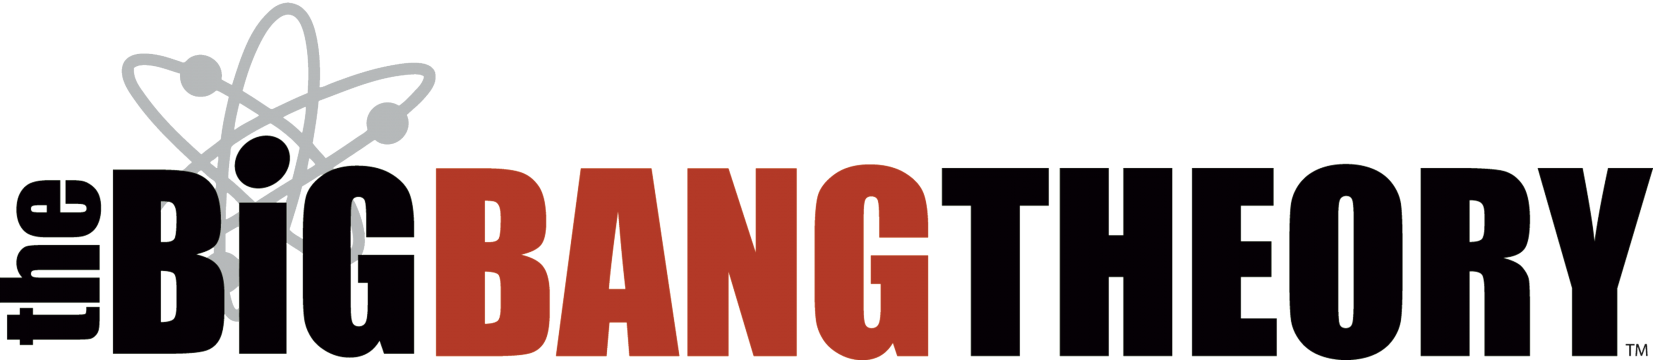 The Big Bang Theory Logo PNG Pic